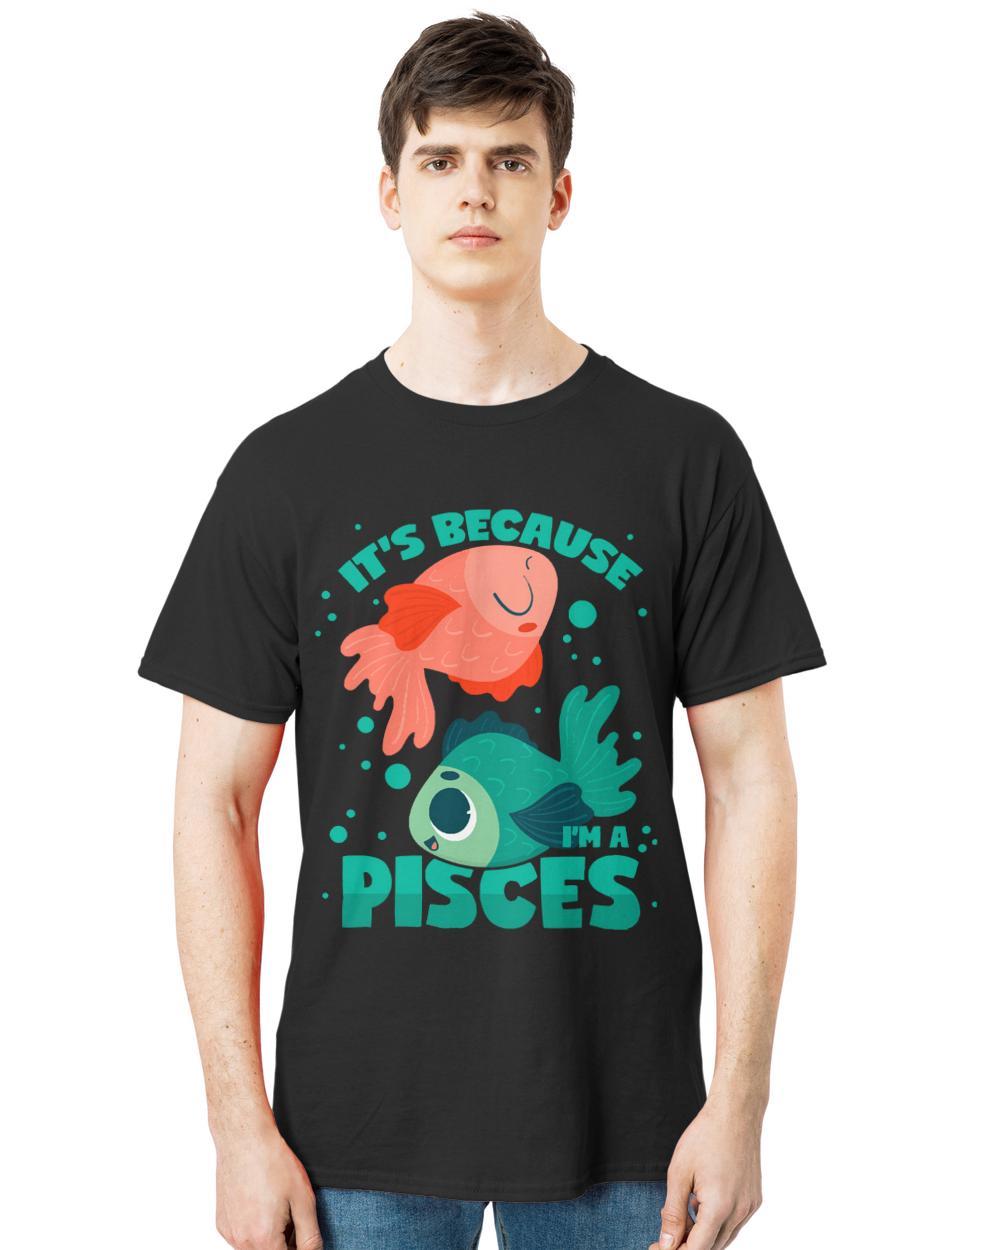 Pisces T- Shirt Pisces Horoscope Star Sign T- Shirt